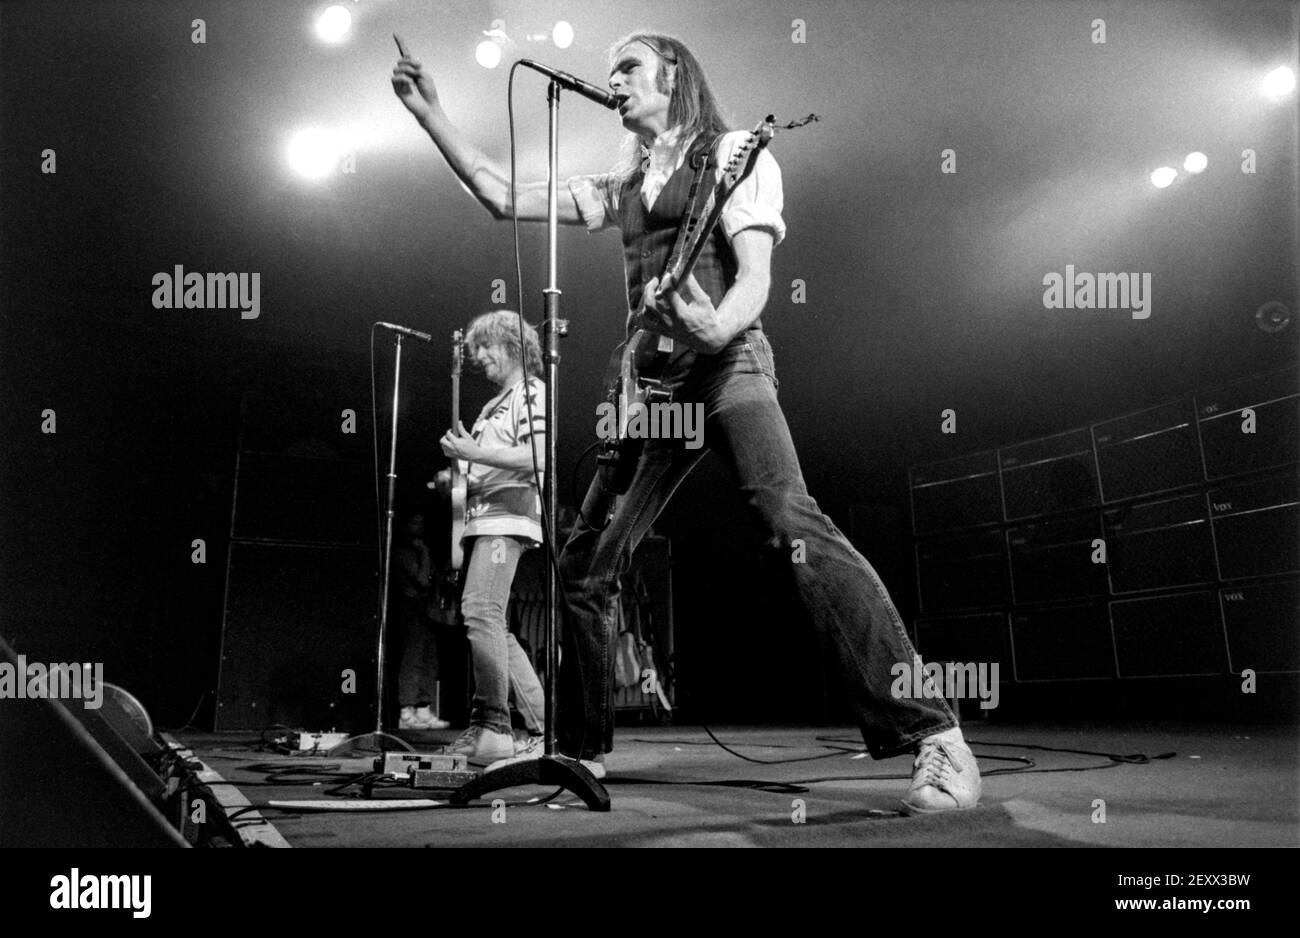 ZWOLLE, NIEDERLANDE - 08. MAI 1984: Status Quo live auf der Bühne während eines Konzerts in den Niederlanden. Stockfoto